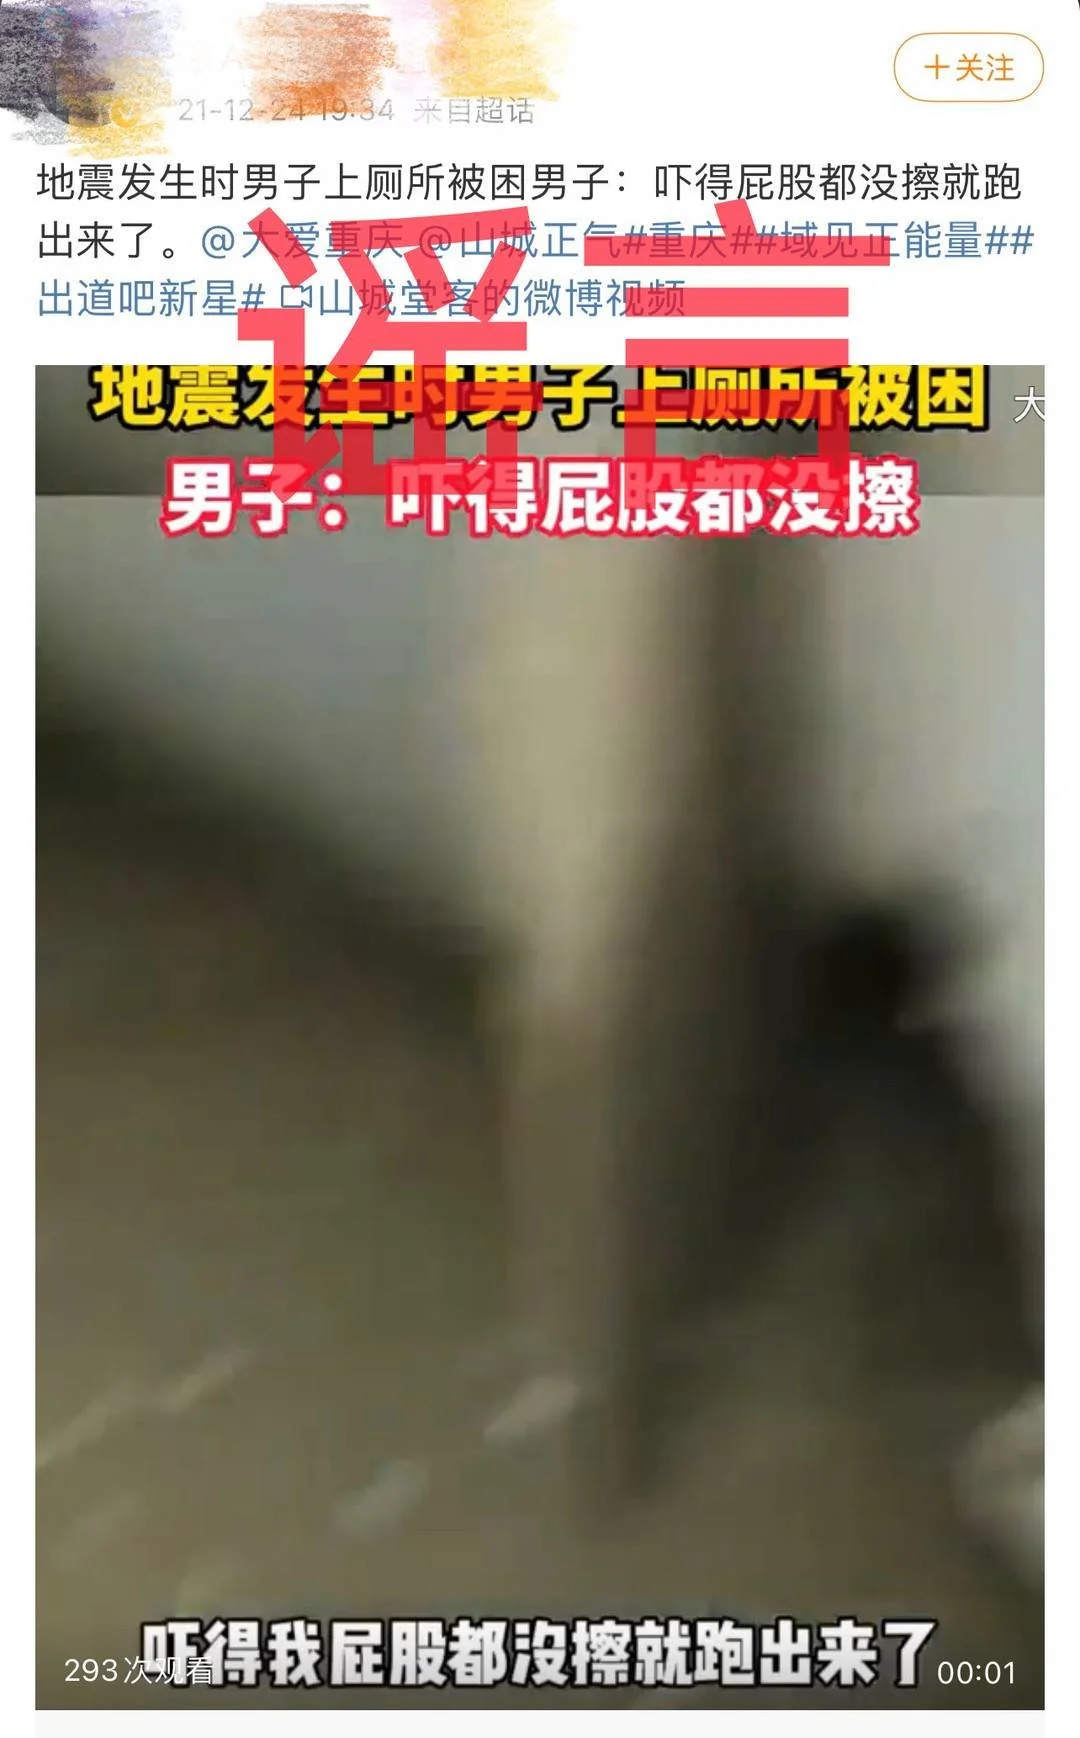 小伙因地震被困厕所?四川警方辟谣